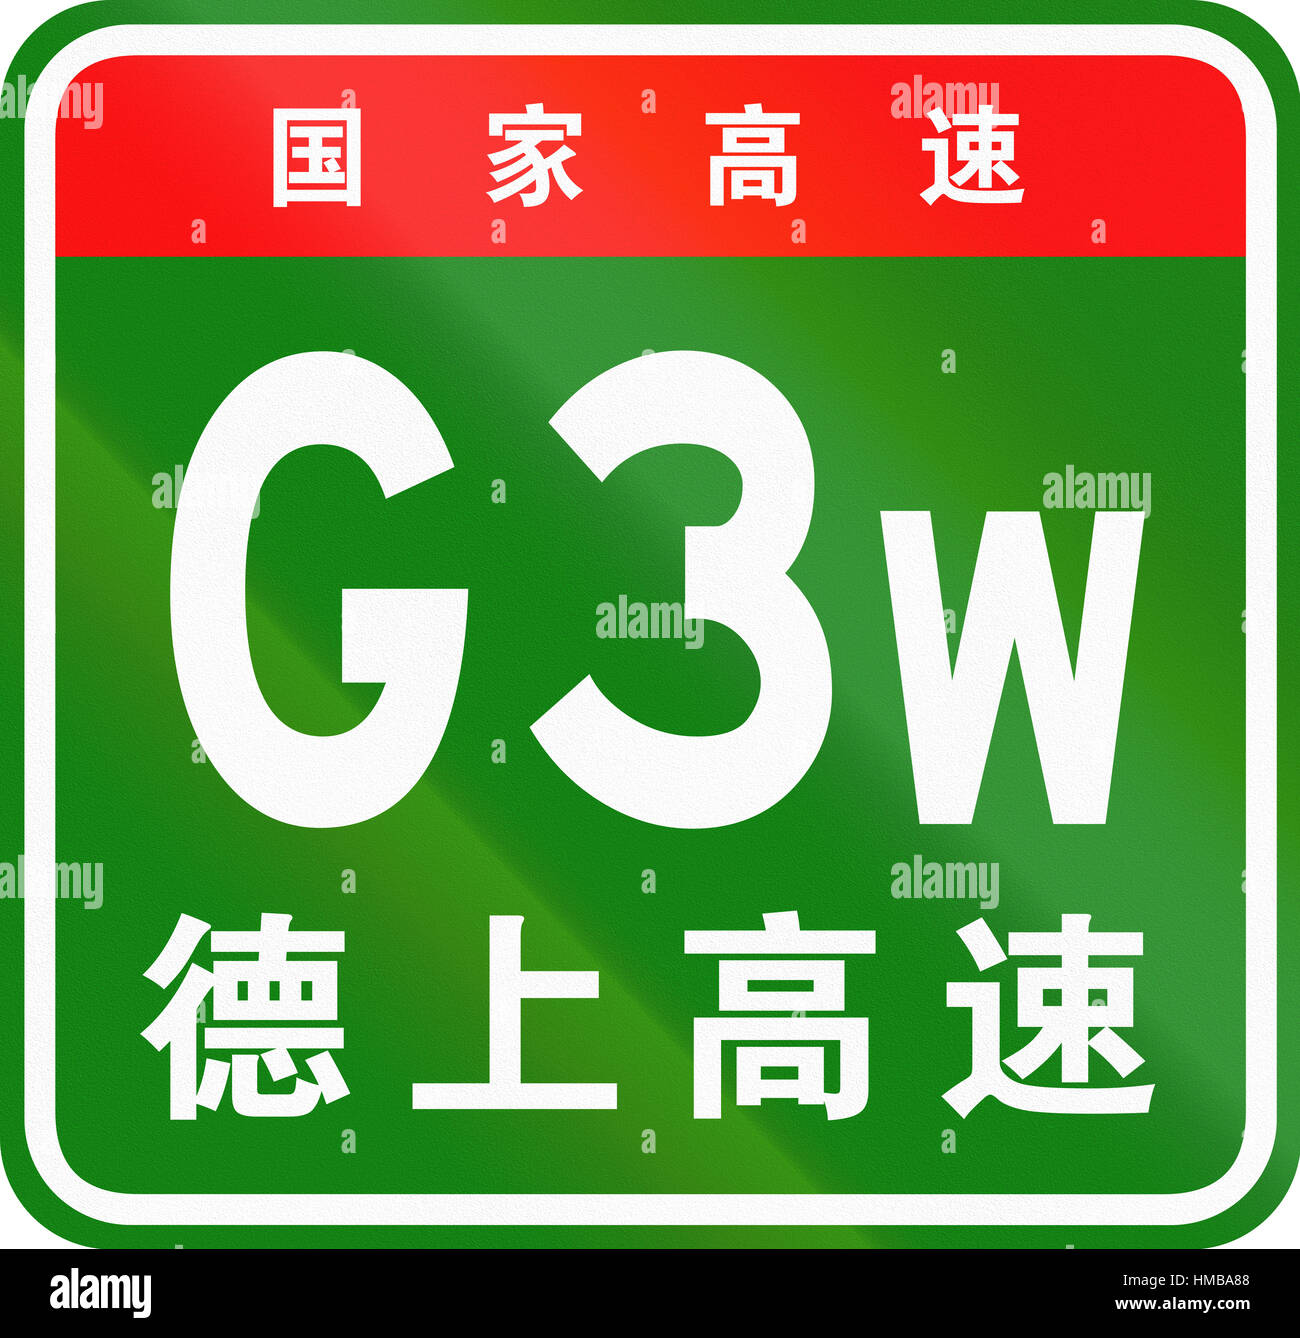 Percorso cinese shield - i caratteri superiore significa Chinese National Highway, minori sono i caratteri del nome della strada - Dezhou-Shangrao Expressw Foto Stock